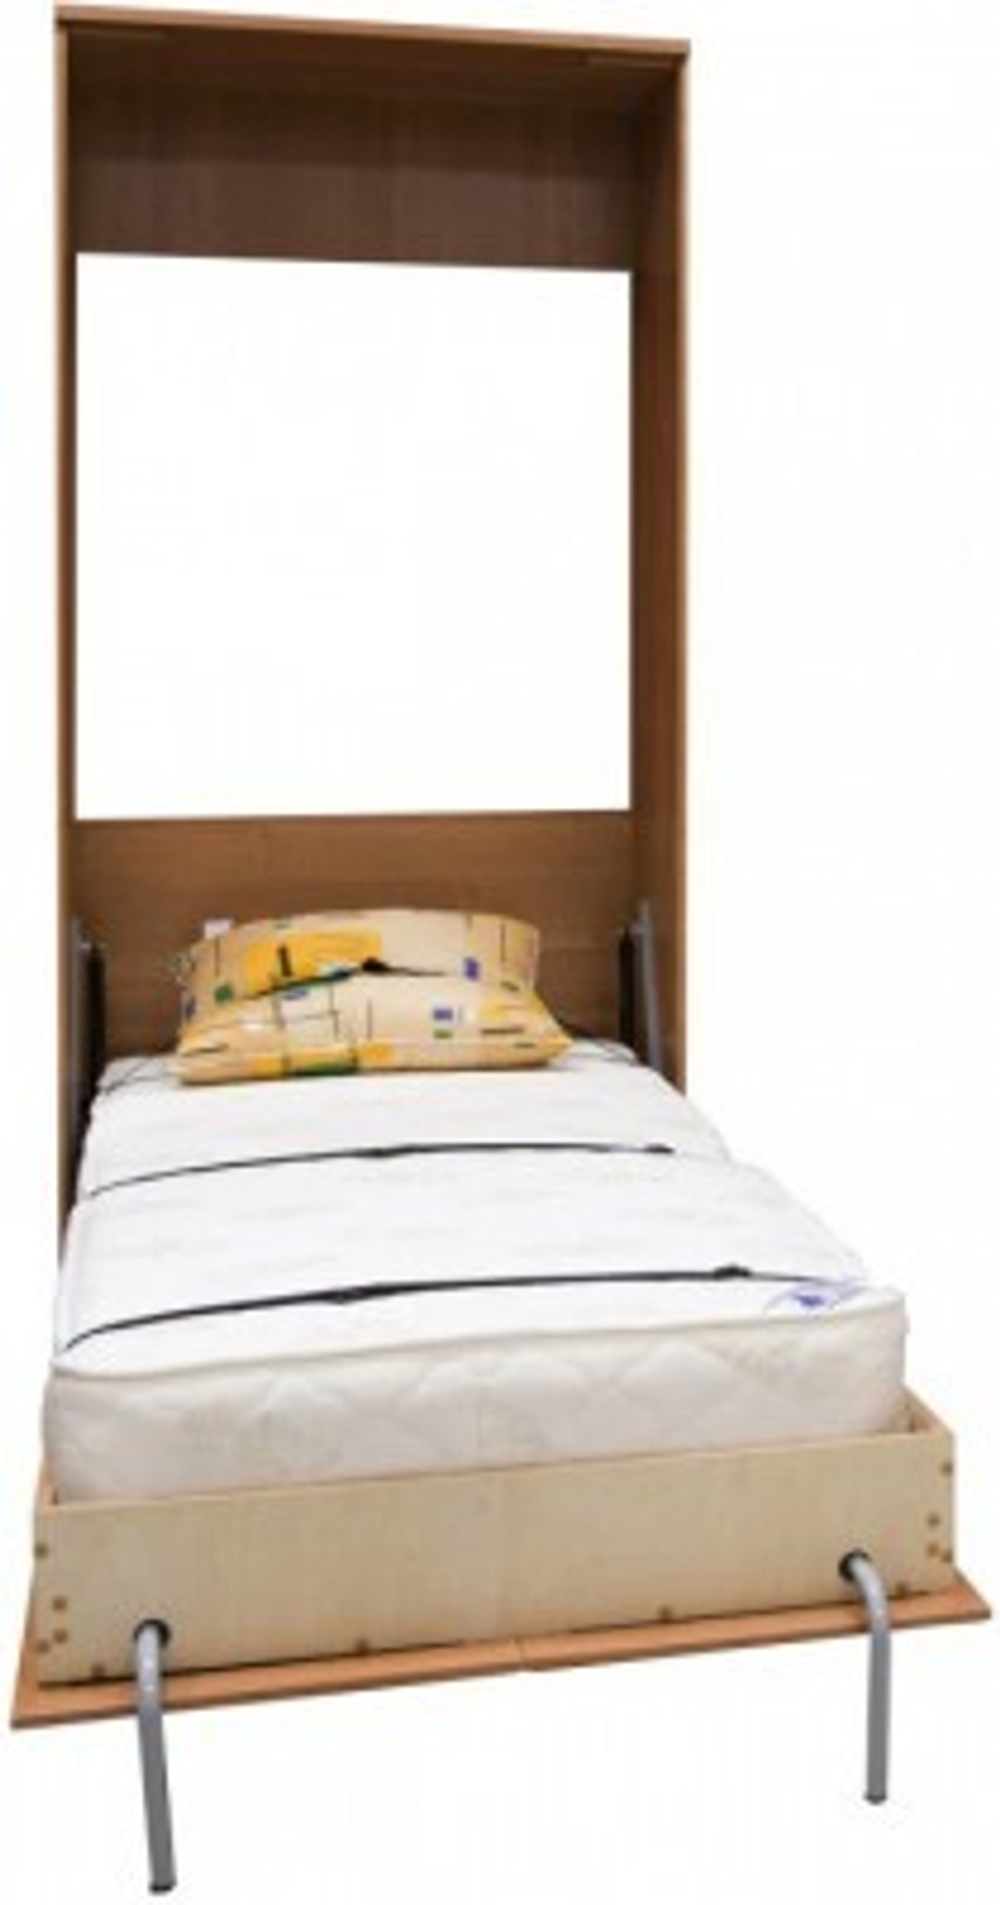 Кровать подъемная 900 мм (вертикальная) АРТК02